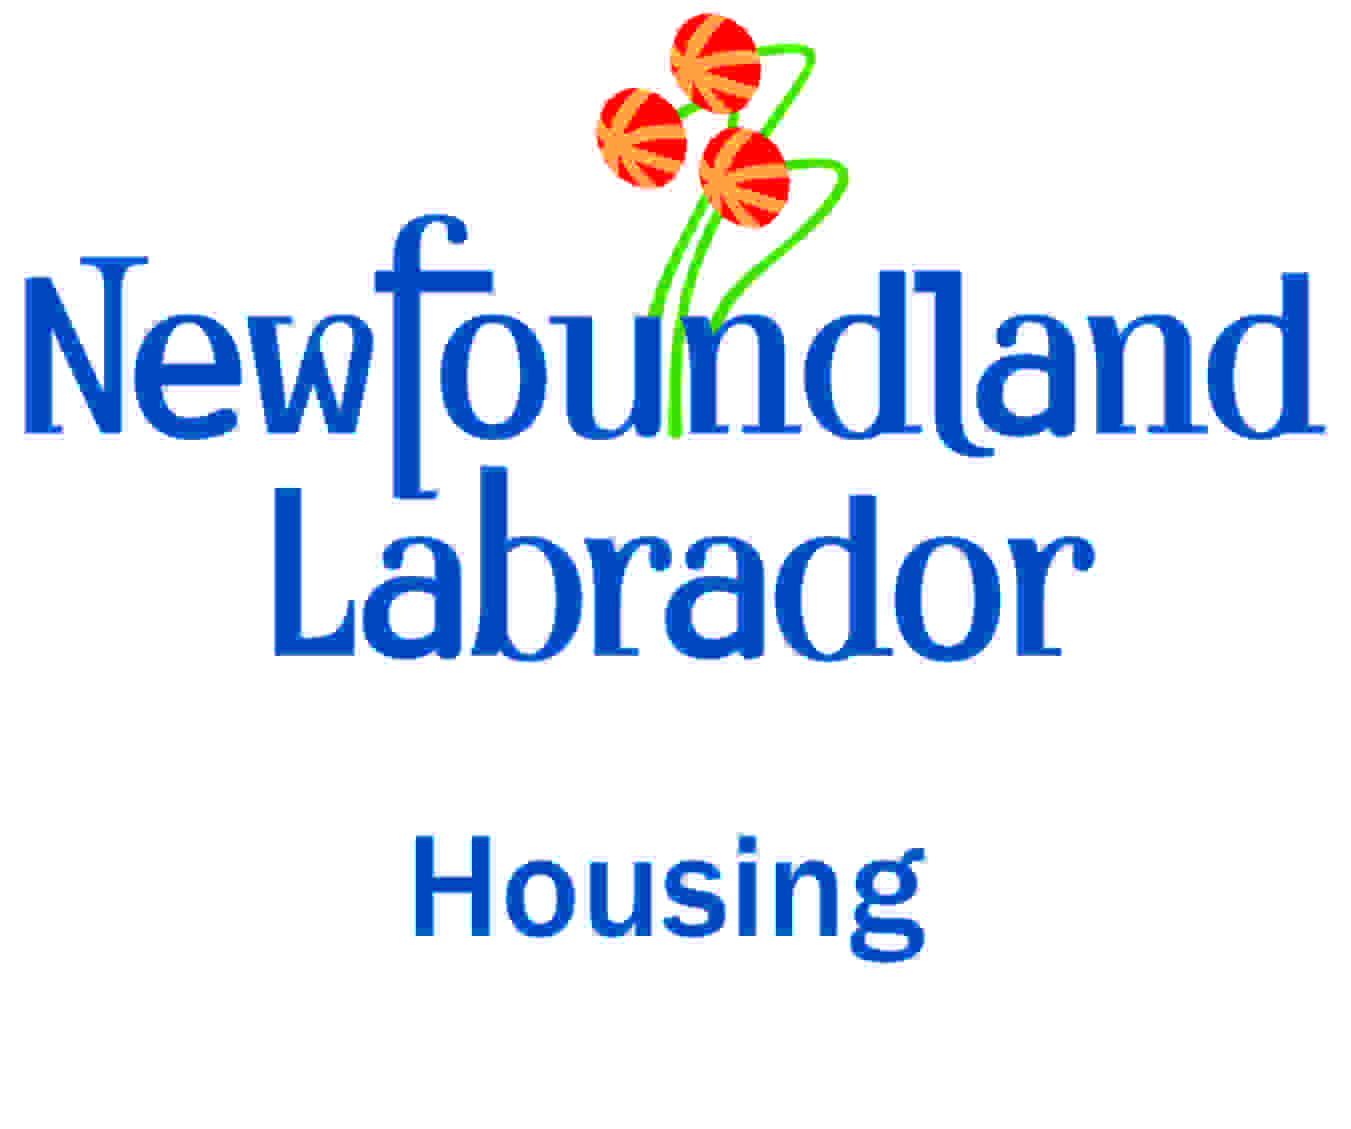 Organization logo of Newfoundland and Labrador Housing Corporation (NLHC)